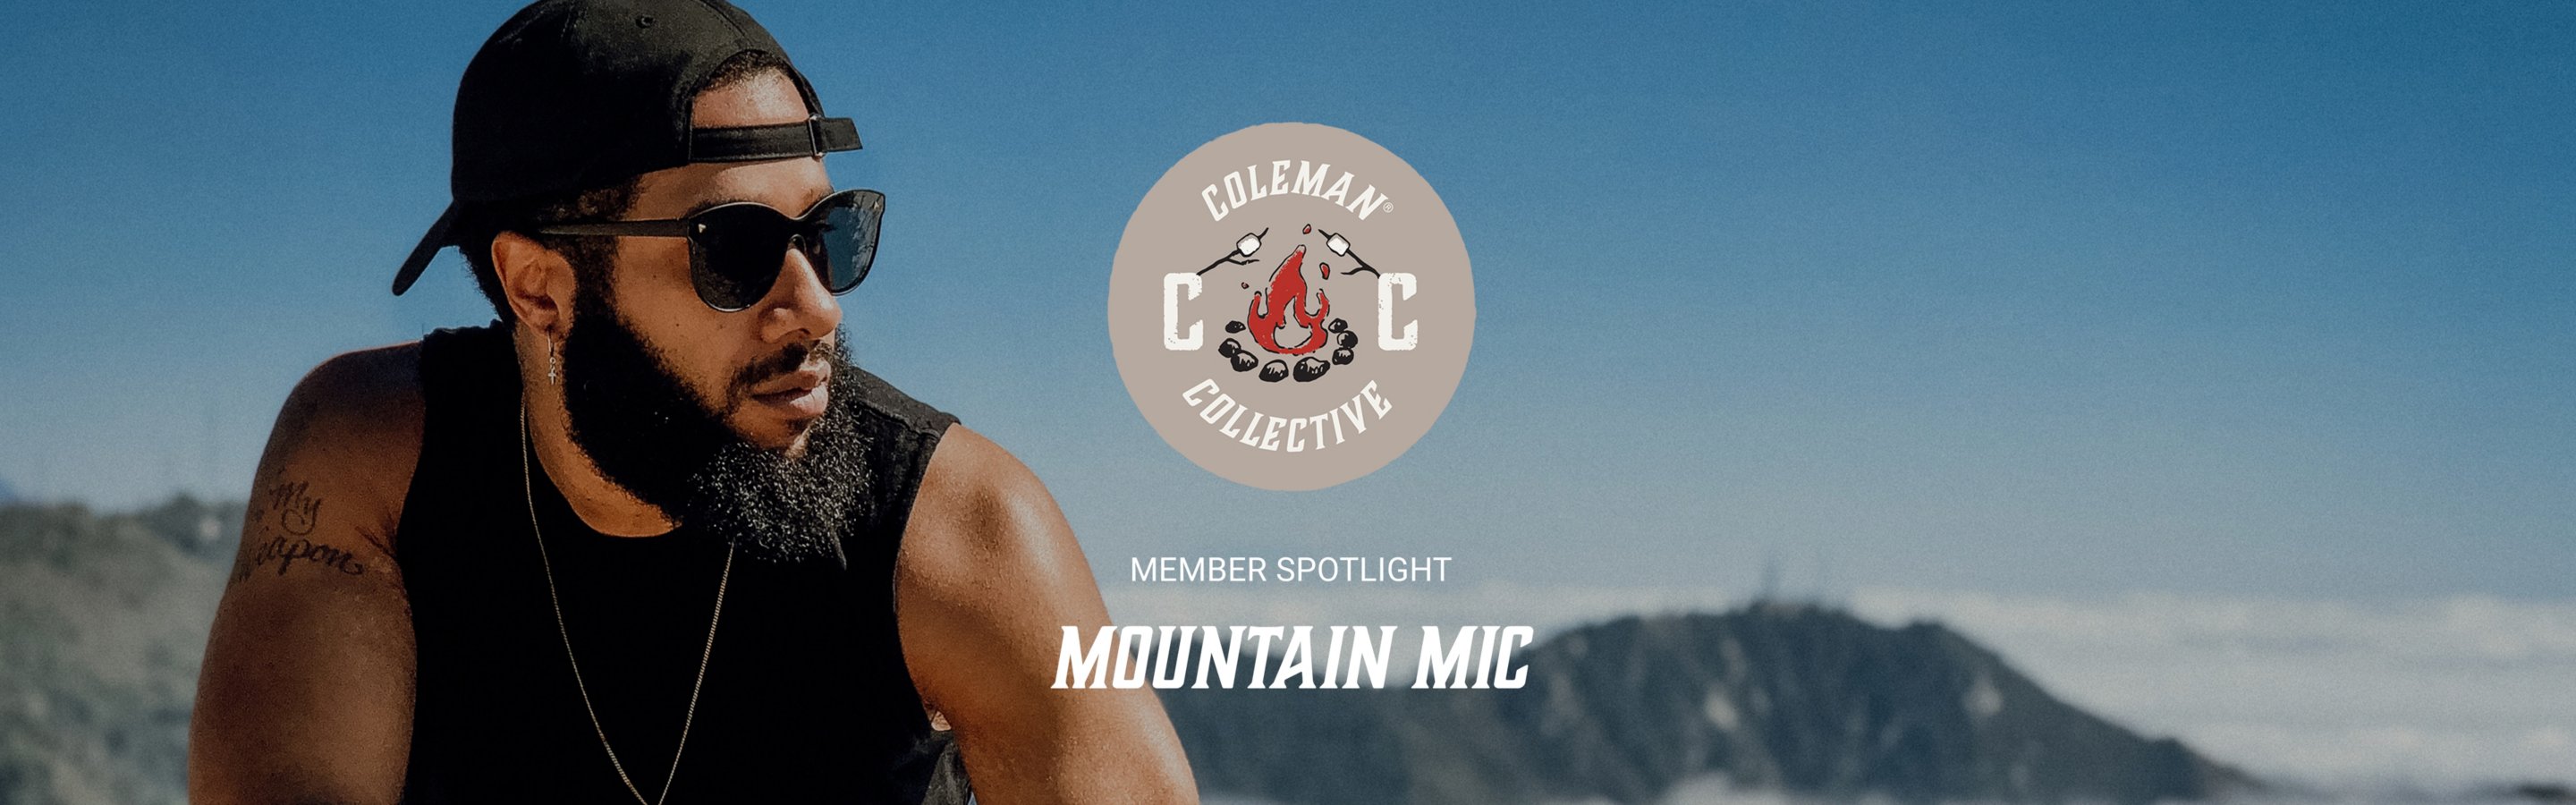 campfire collective member spotlight mountain mic